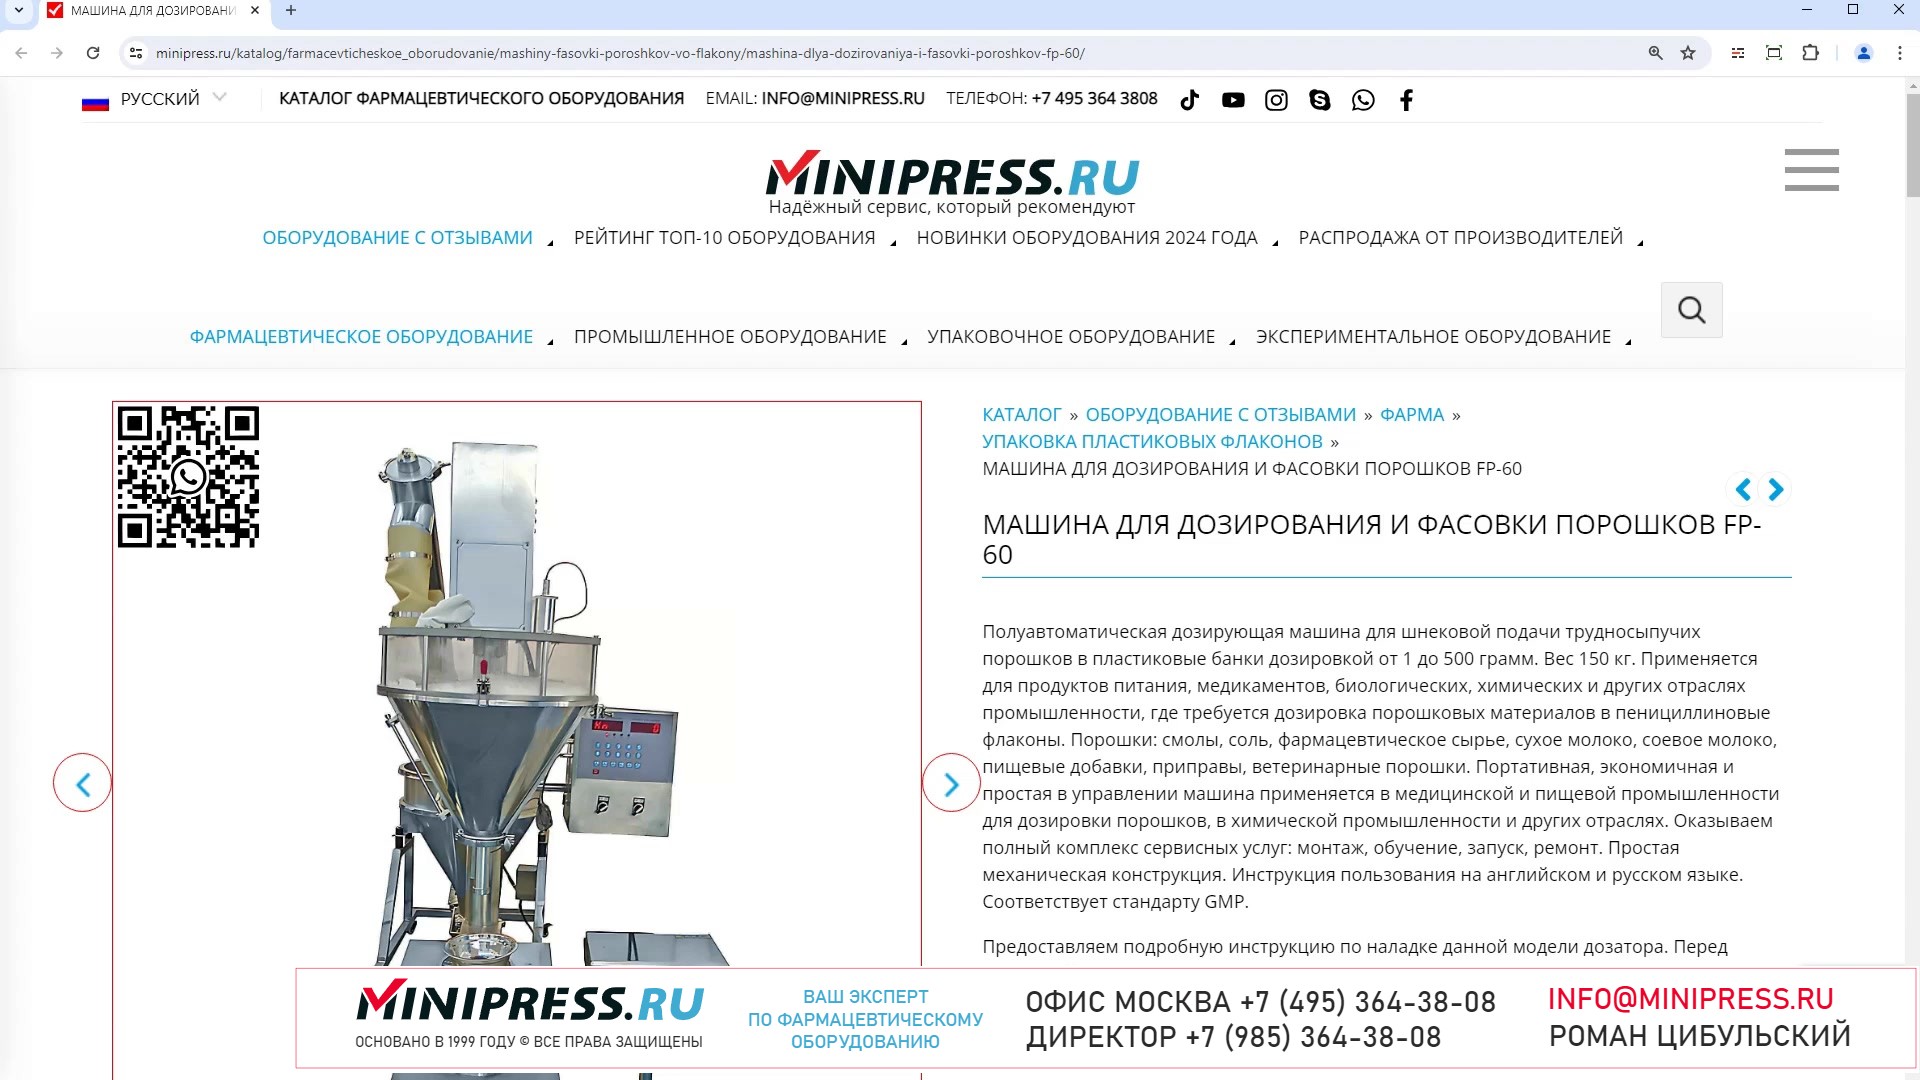 Minipress.ru Машина для дозирования и фасовки порошков FP-60